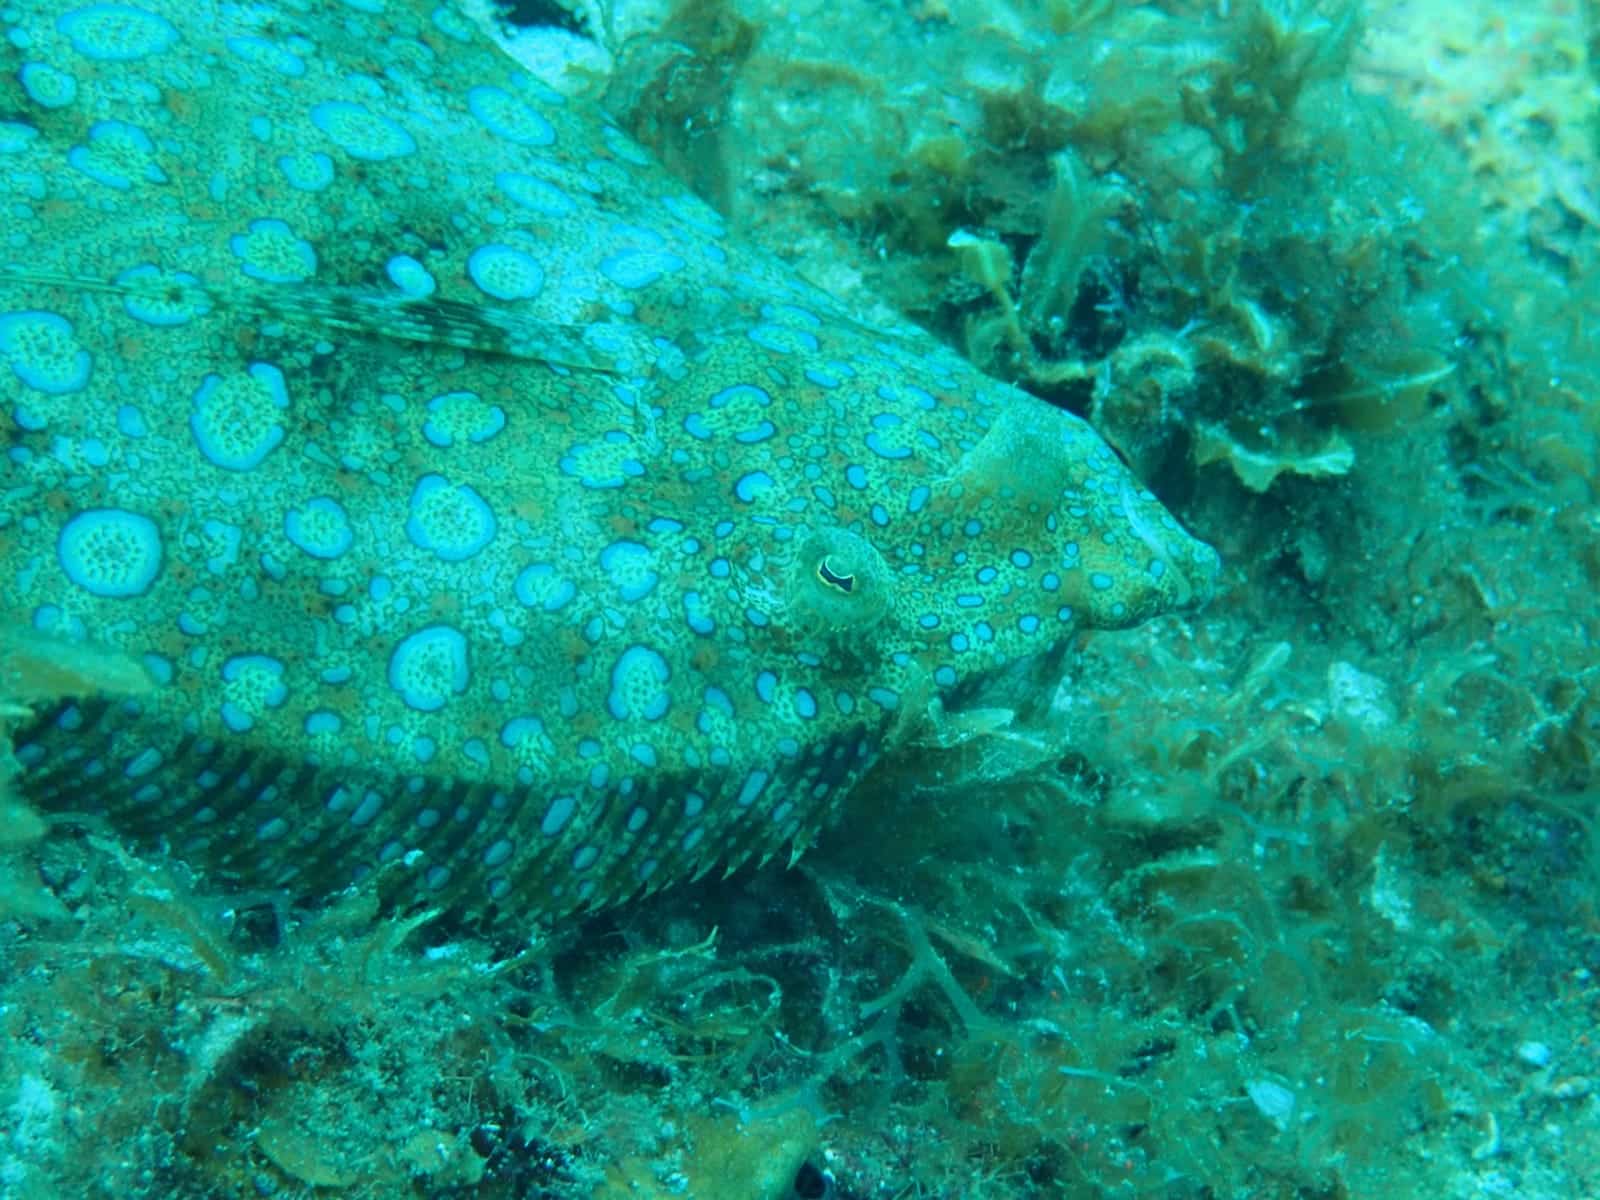 Le carrelet : ce poisson plat est assez fréquemment observé aux Anses d'Arl…